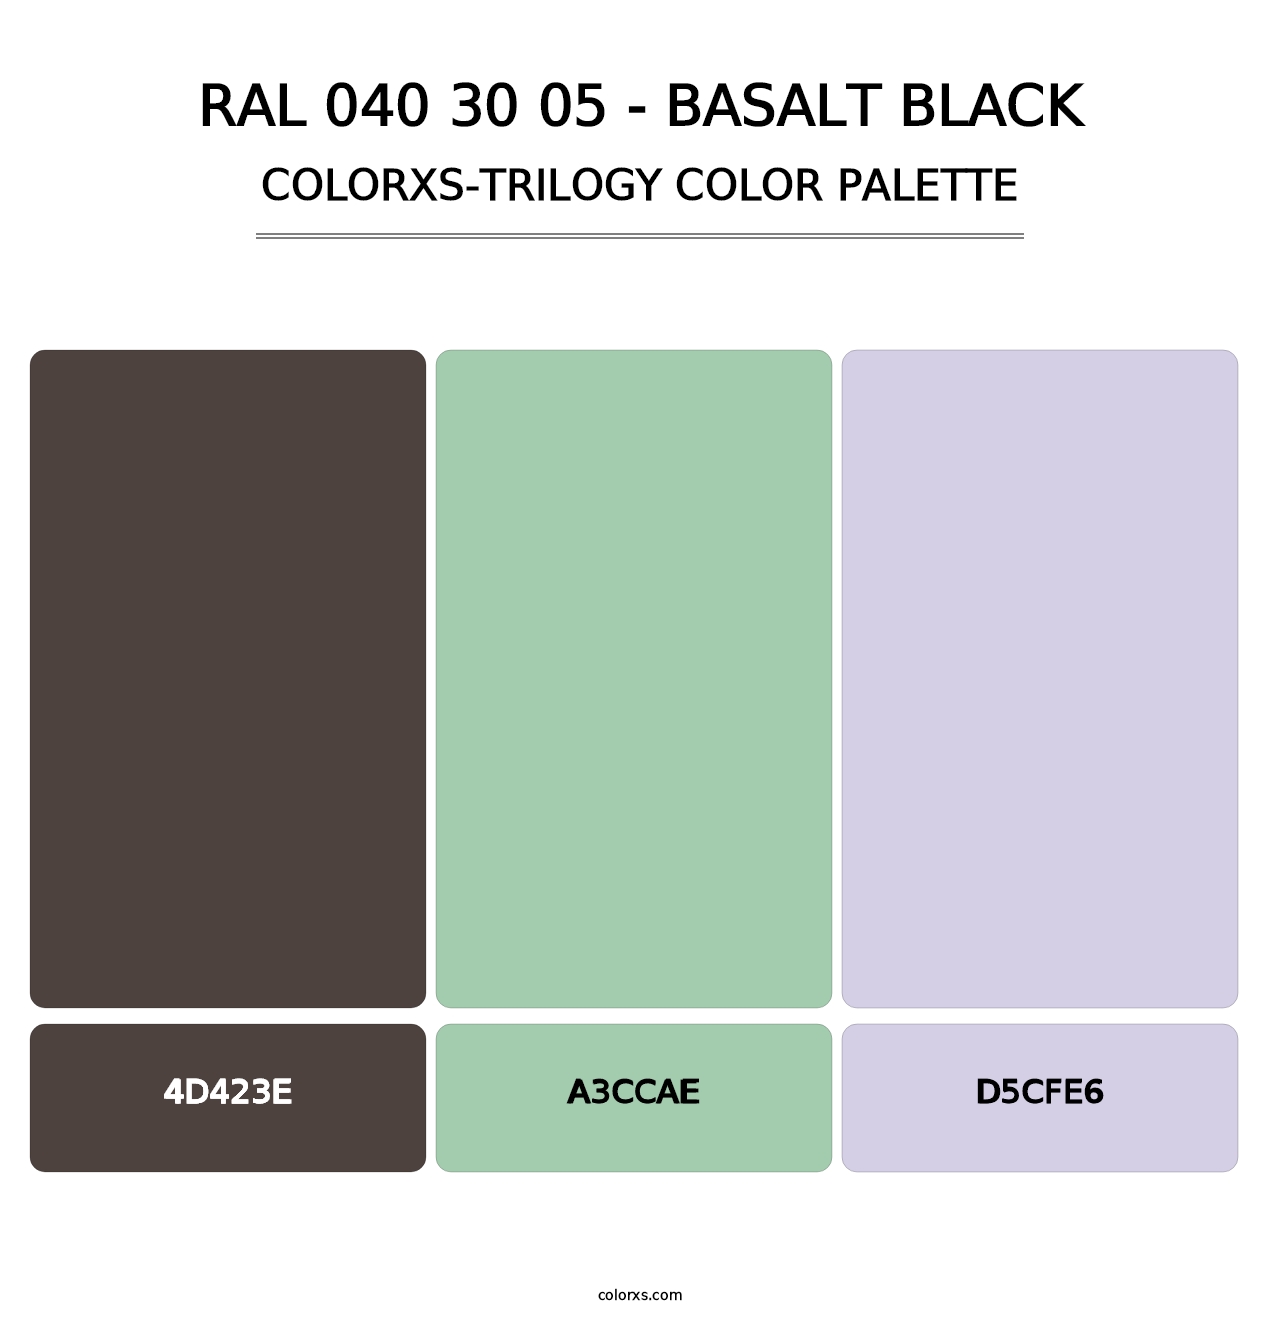 RAL 040 30 05 - Basalt Black - Colorxs Trilogy Palette